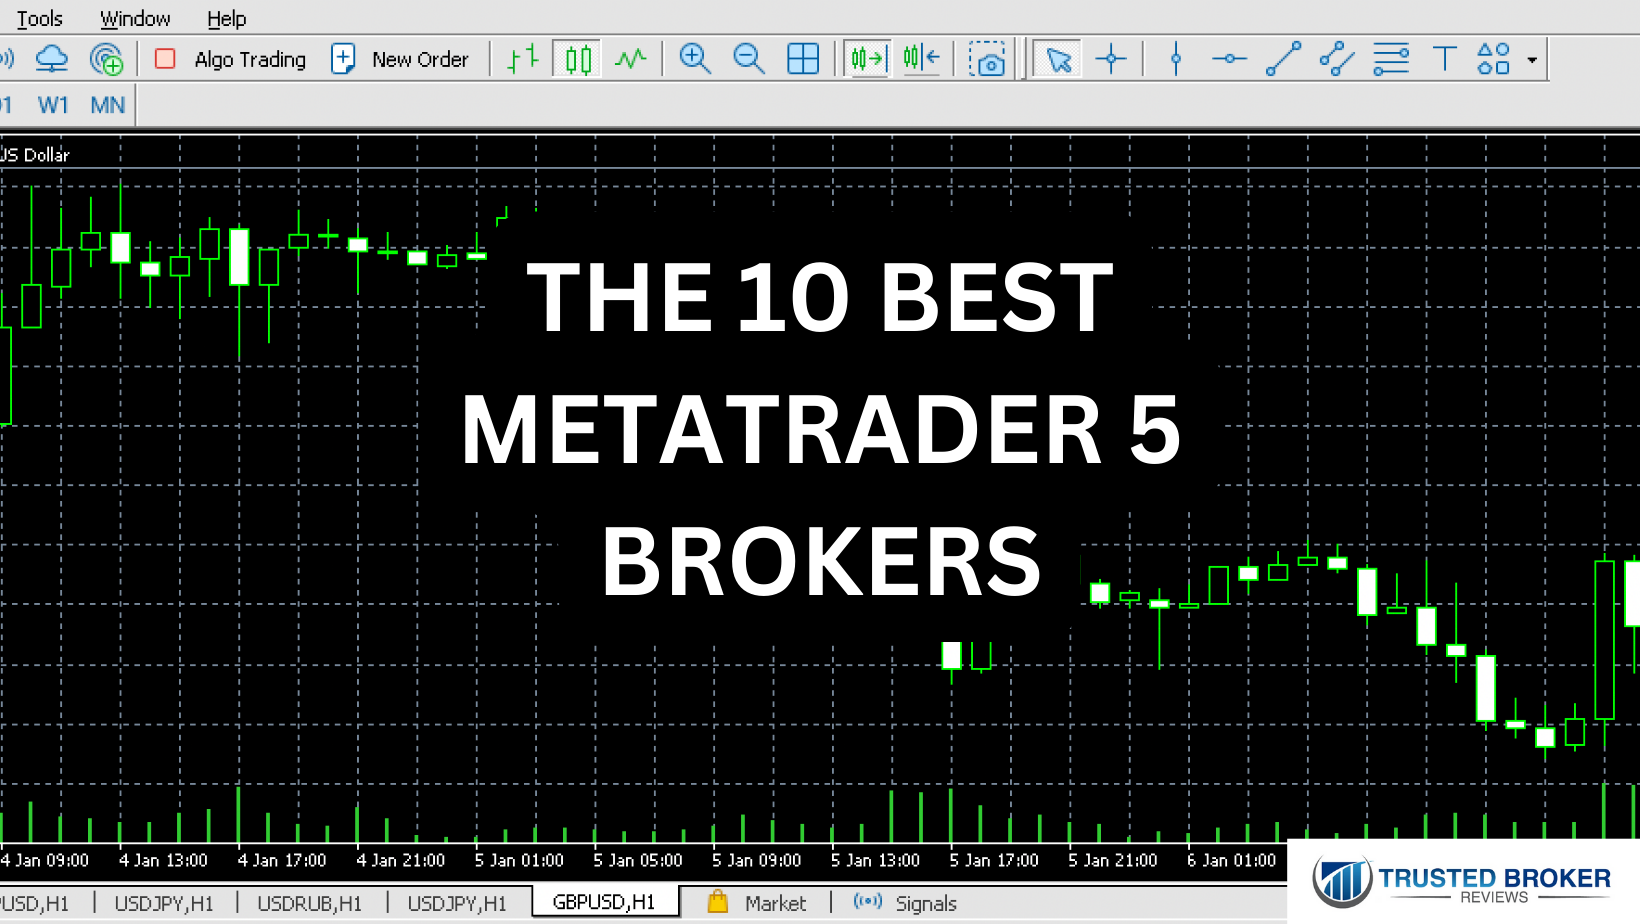 The 10 best MetaTrader 5 brokers